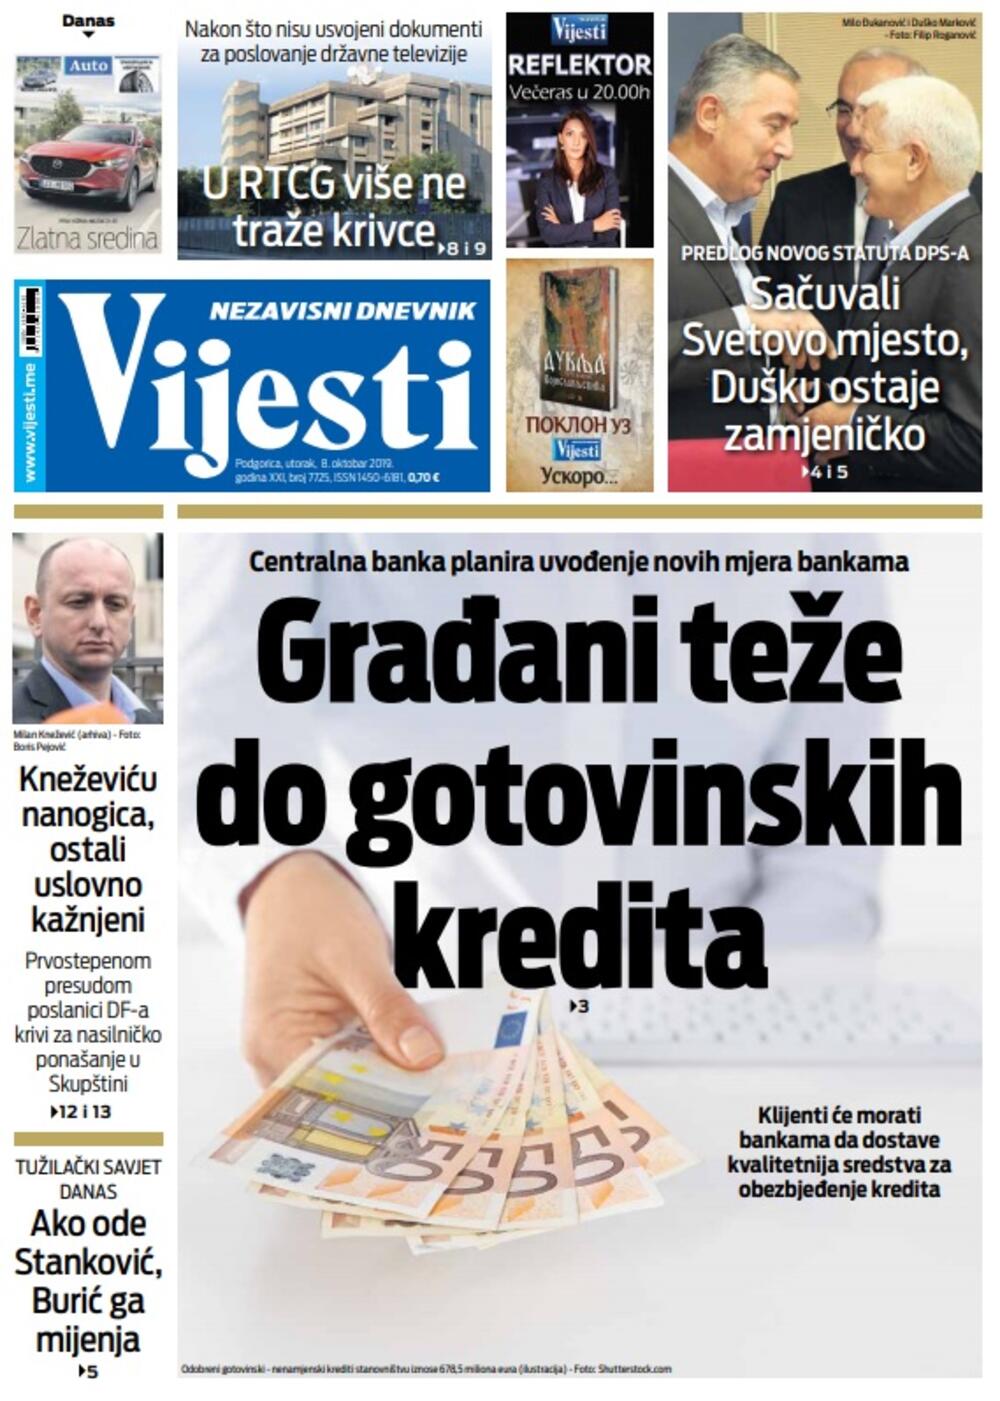 Naslovna strana "Vijesti" za 8. oktobar, Foto: "Vijesti"